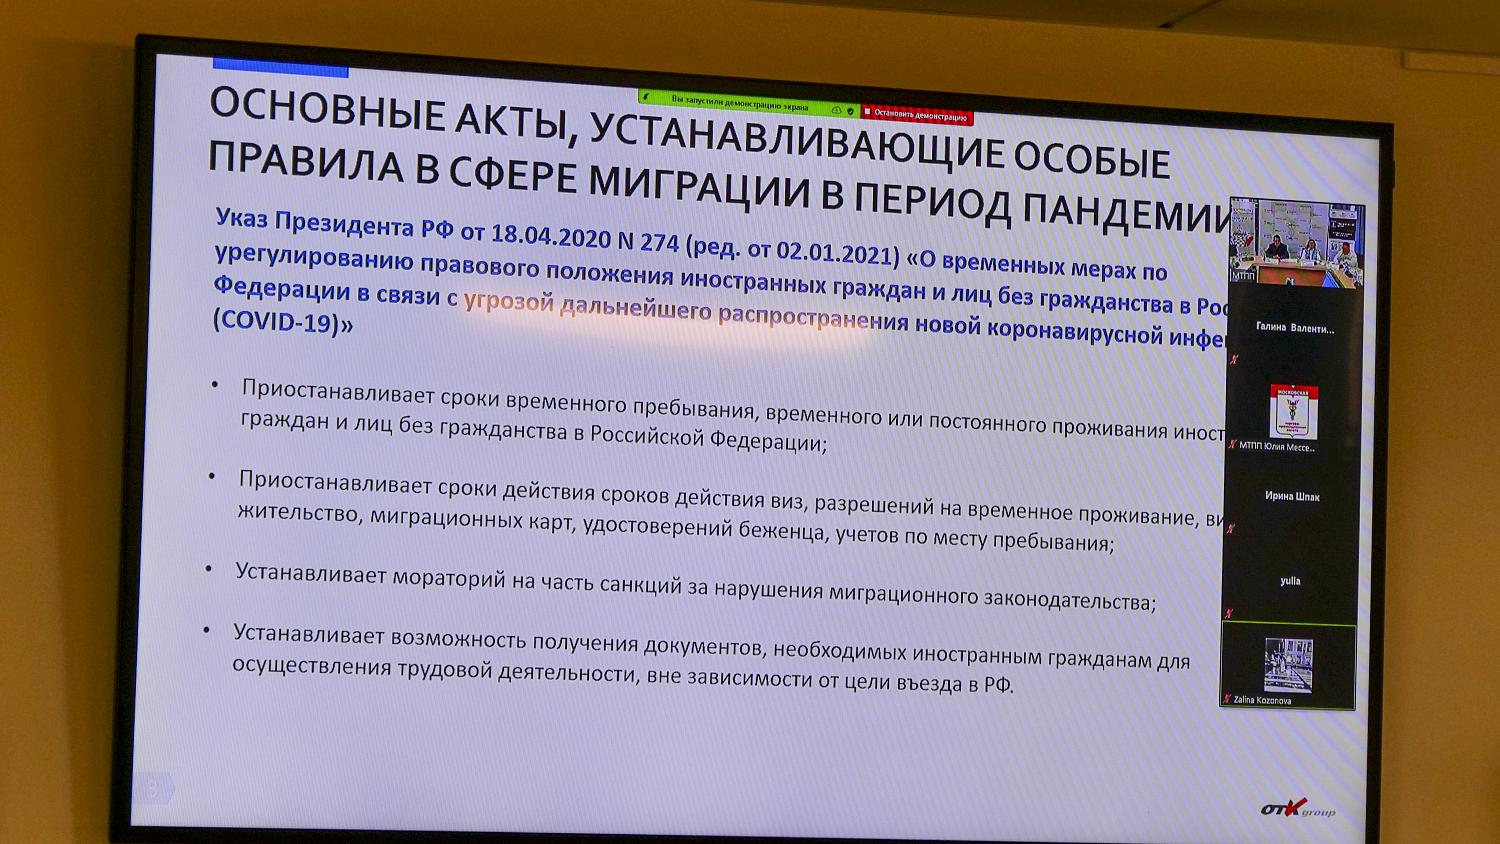 Предпринимателям рассказали о системе правовых актов, регулирующих вопросы въезда иностранных граждан на территорию РФ во время пандемии